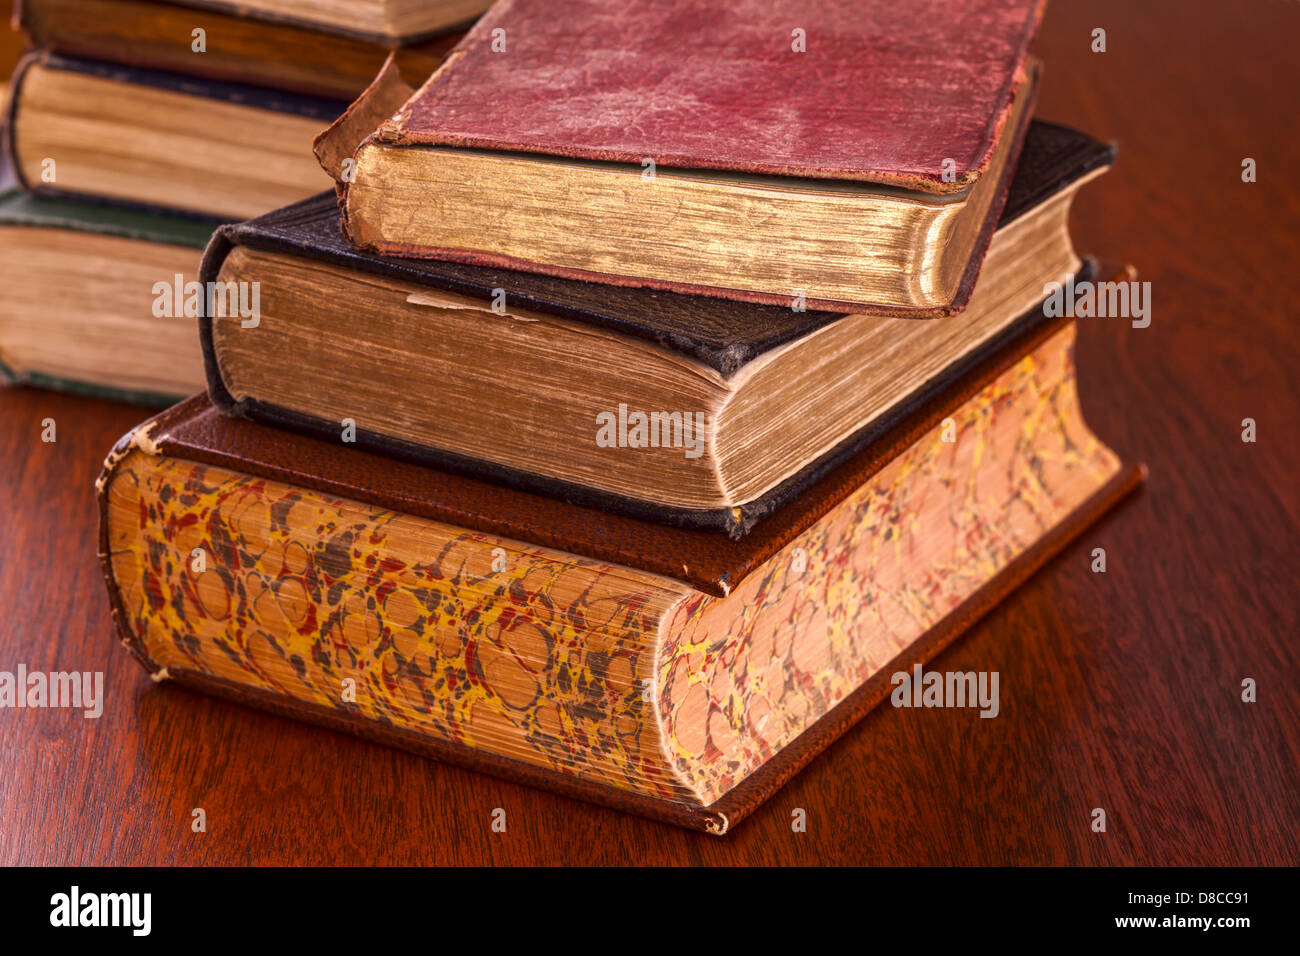 Alte Bücher auf dunklem Holz - ramponierte alte Bücher auf einem dunklen Eiche Tisch konzentrieren sich auf Vordergrund. Stockfoto